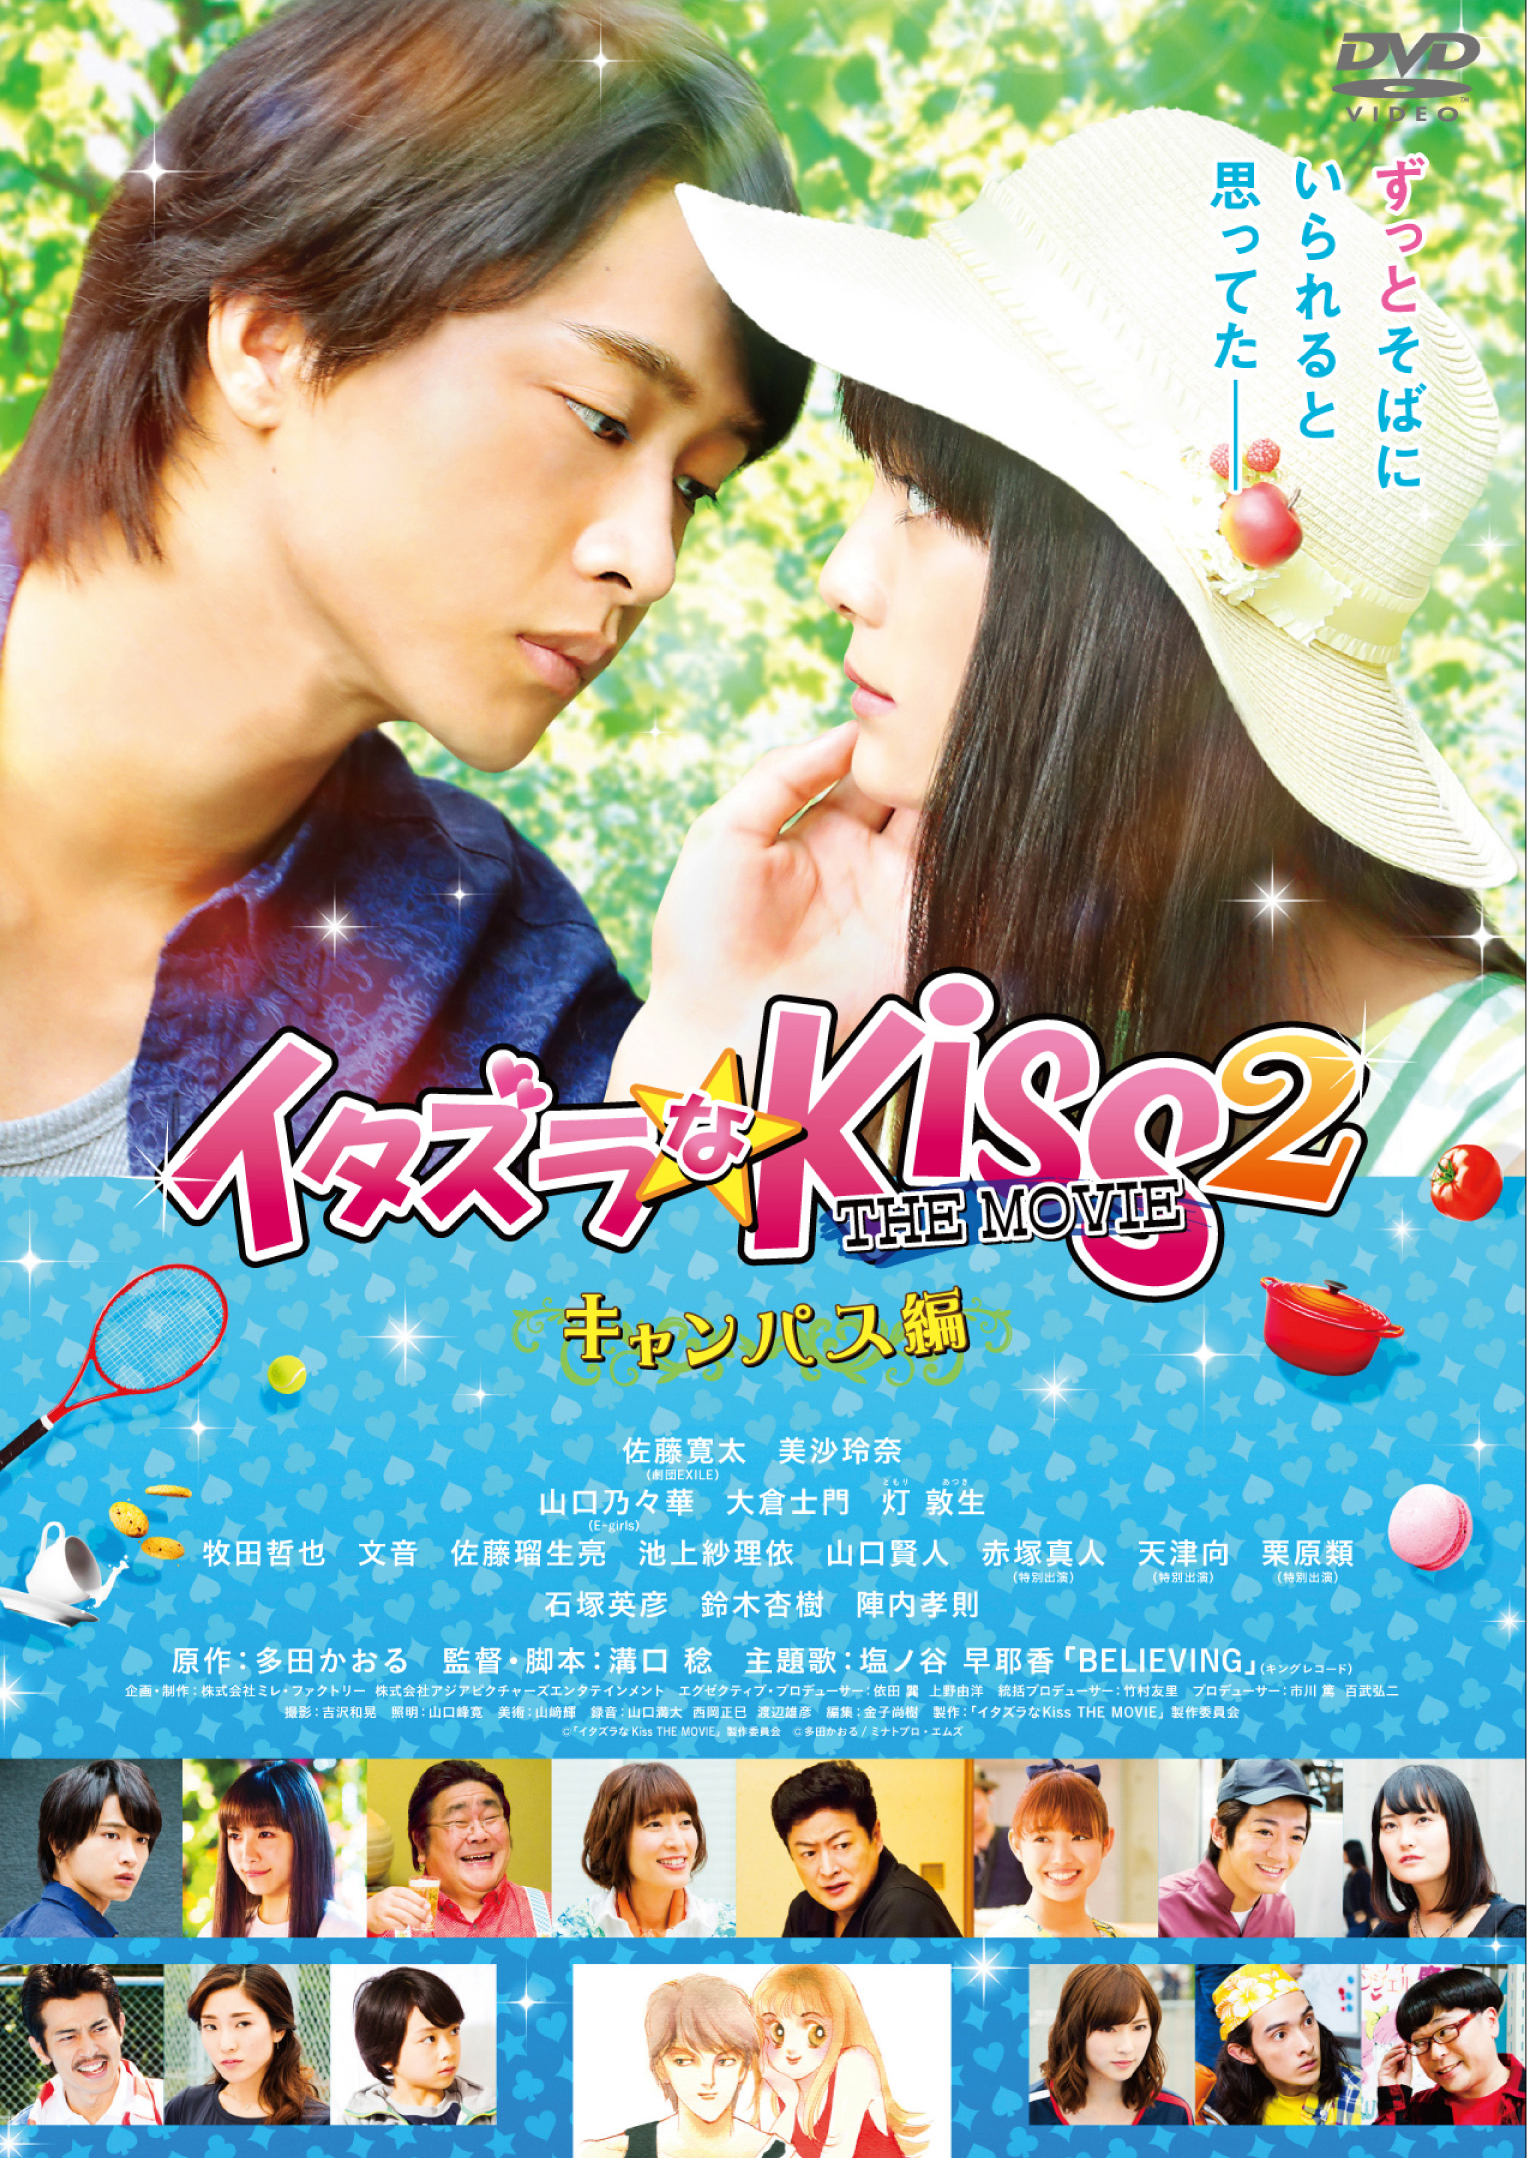 itazura na kiss movie 2016